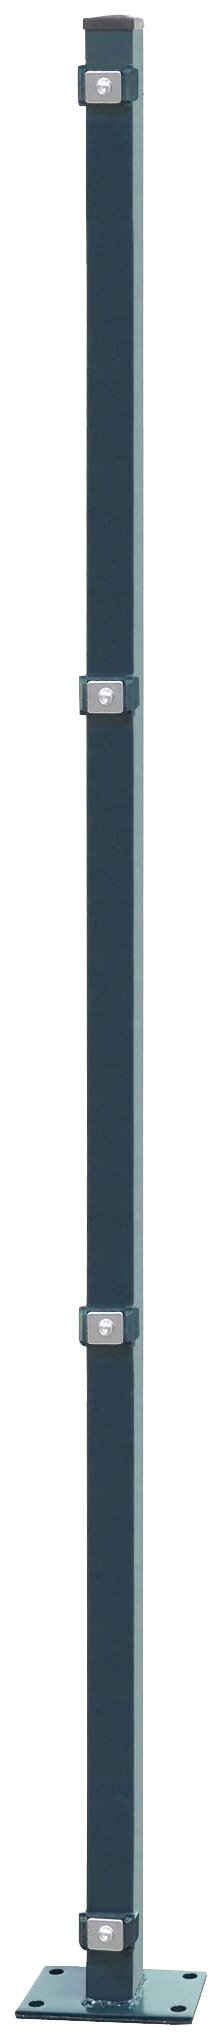 Arvotec Zaunpfosten EASY 180, 6x4x189 cm für Mattenhöhe 180 cm, zum Aufschrauben